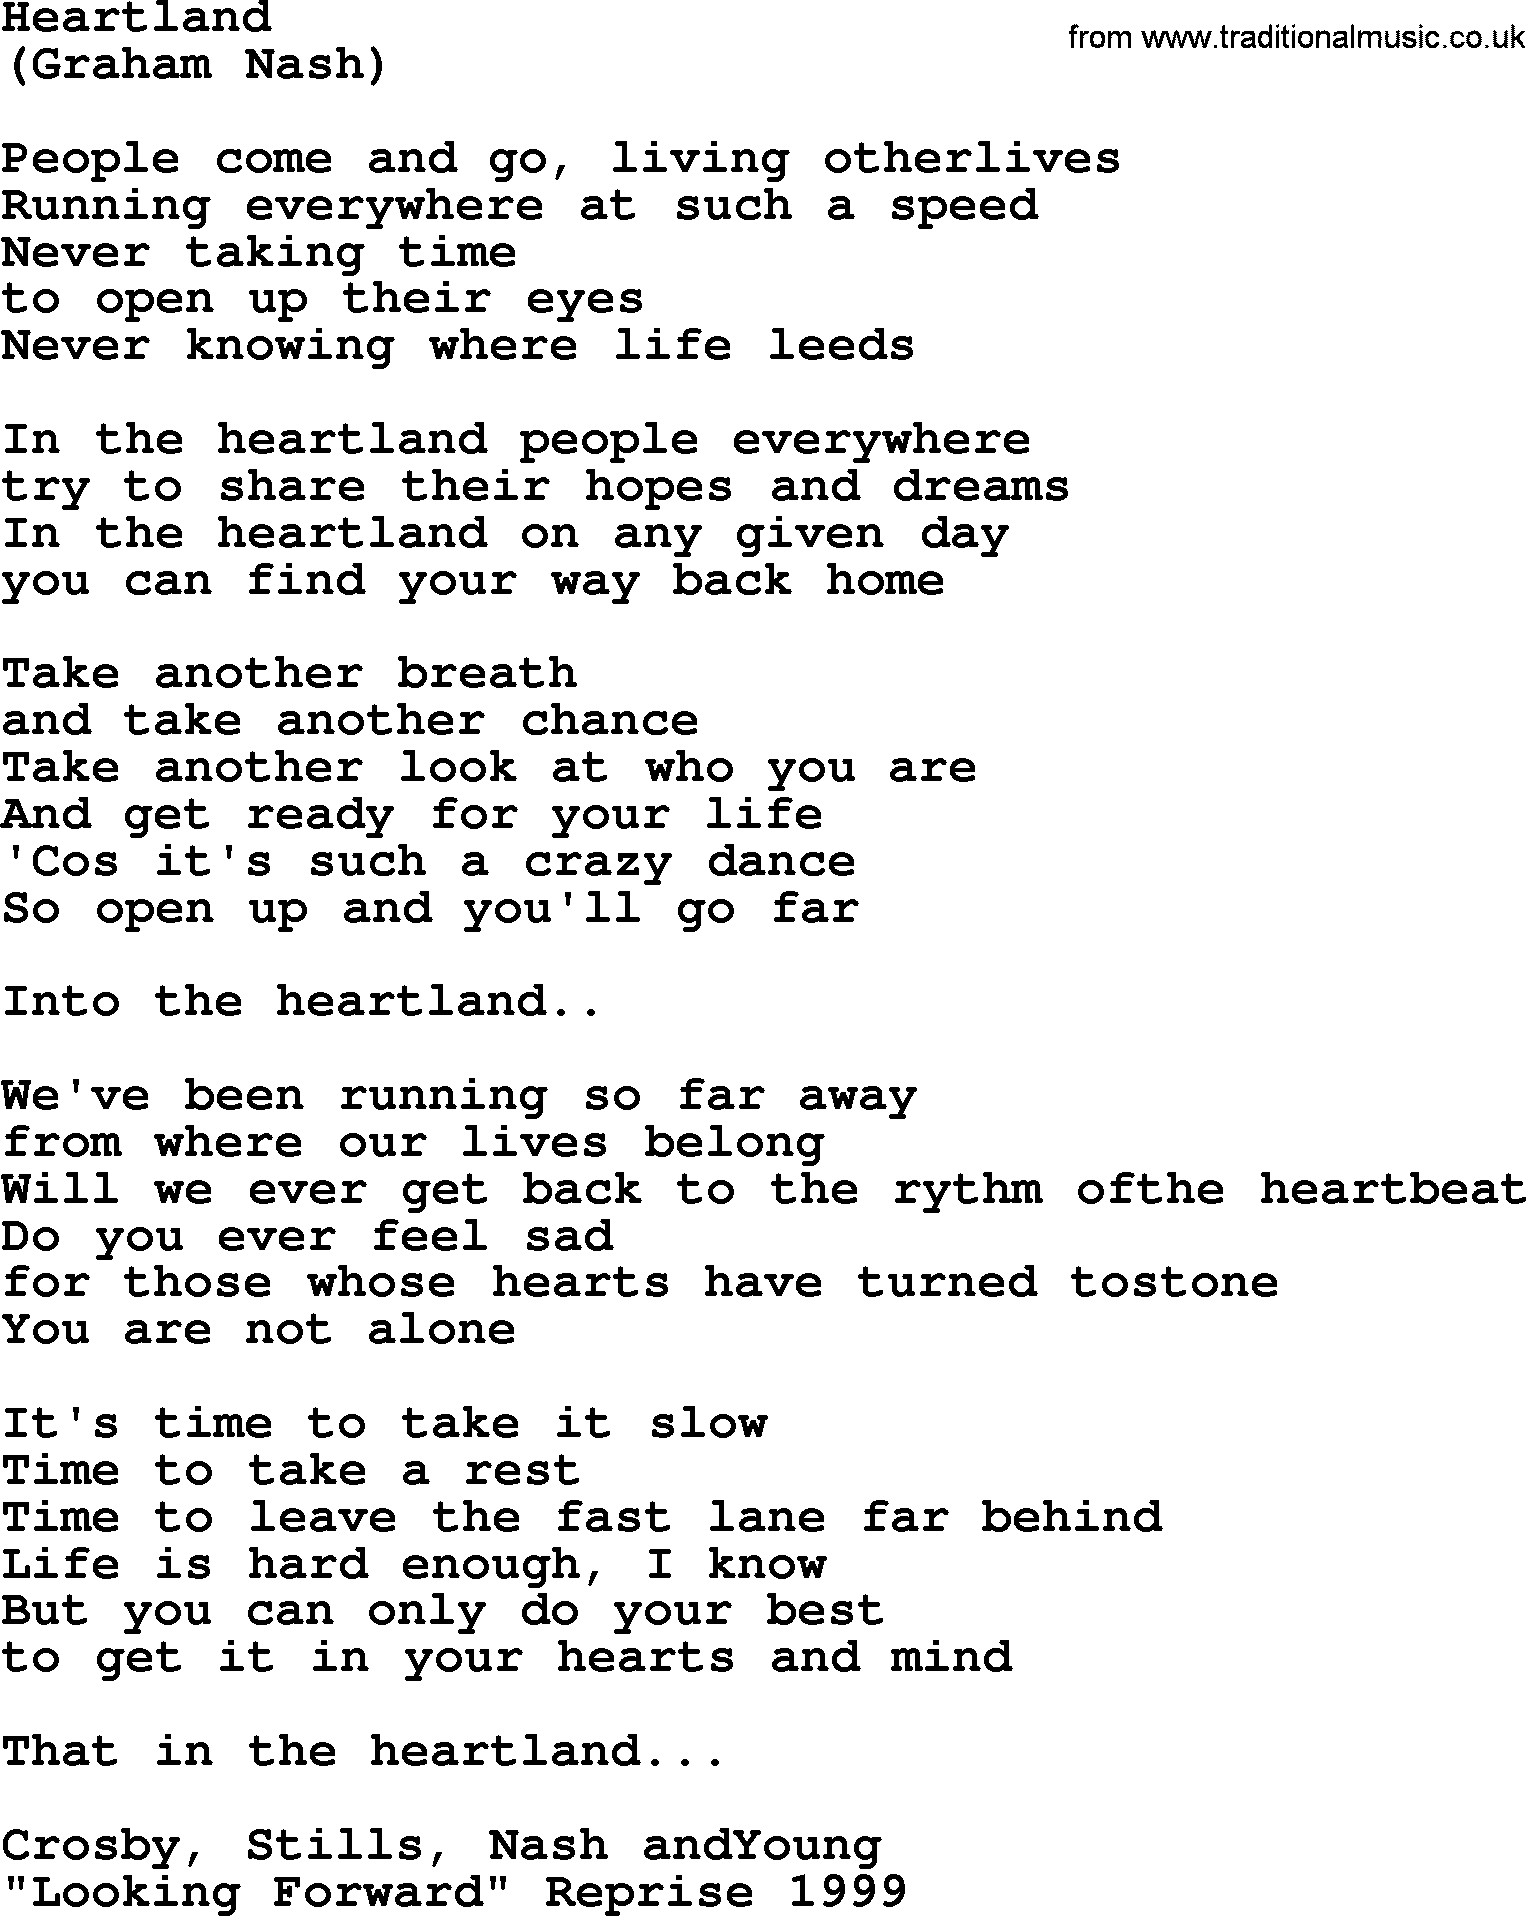 The Byrds song Heartland, lyrics